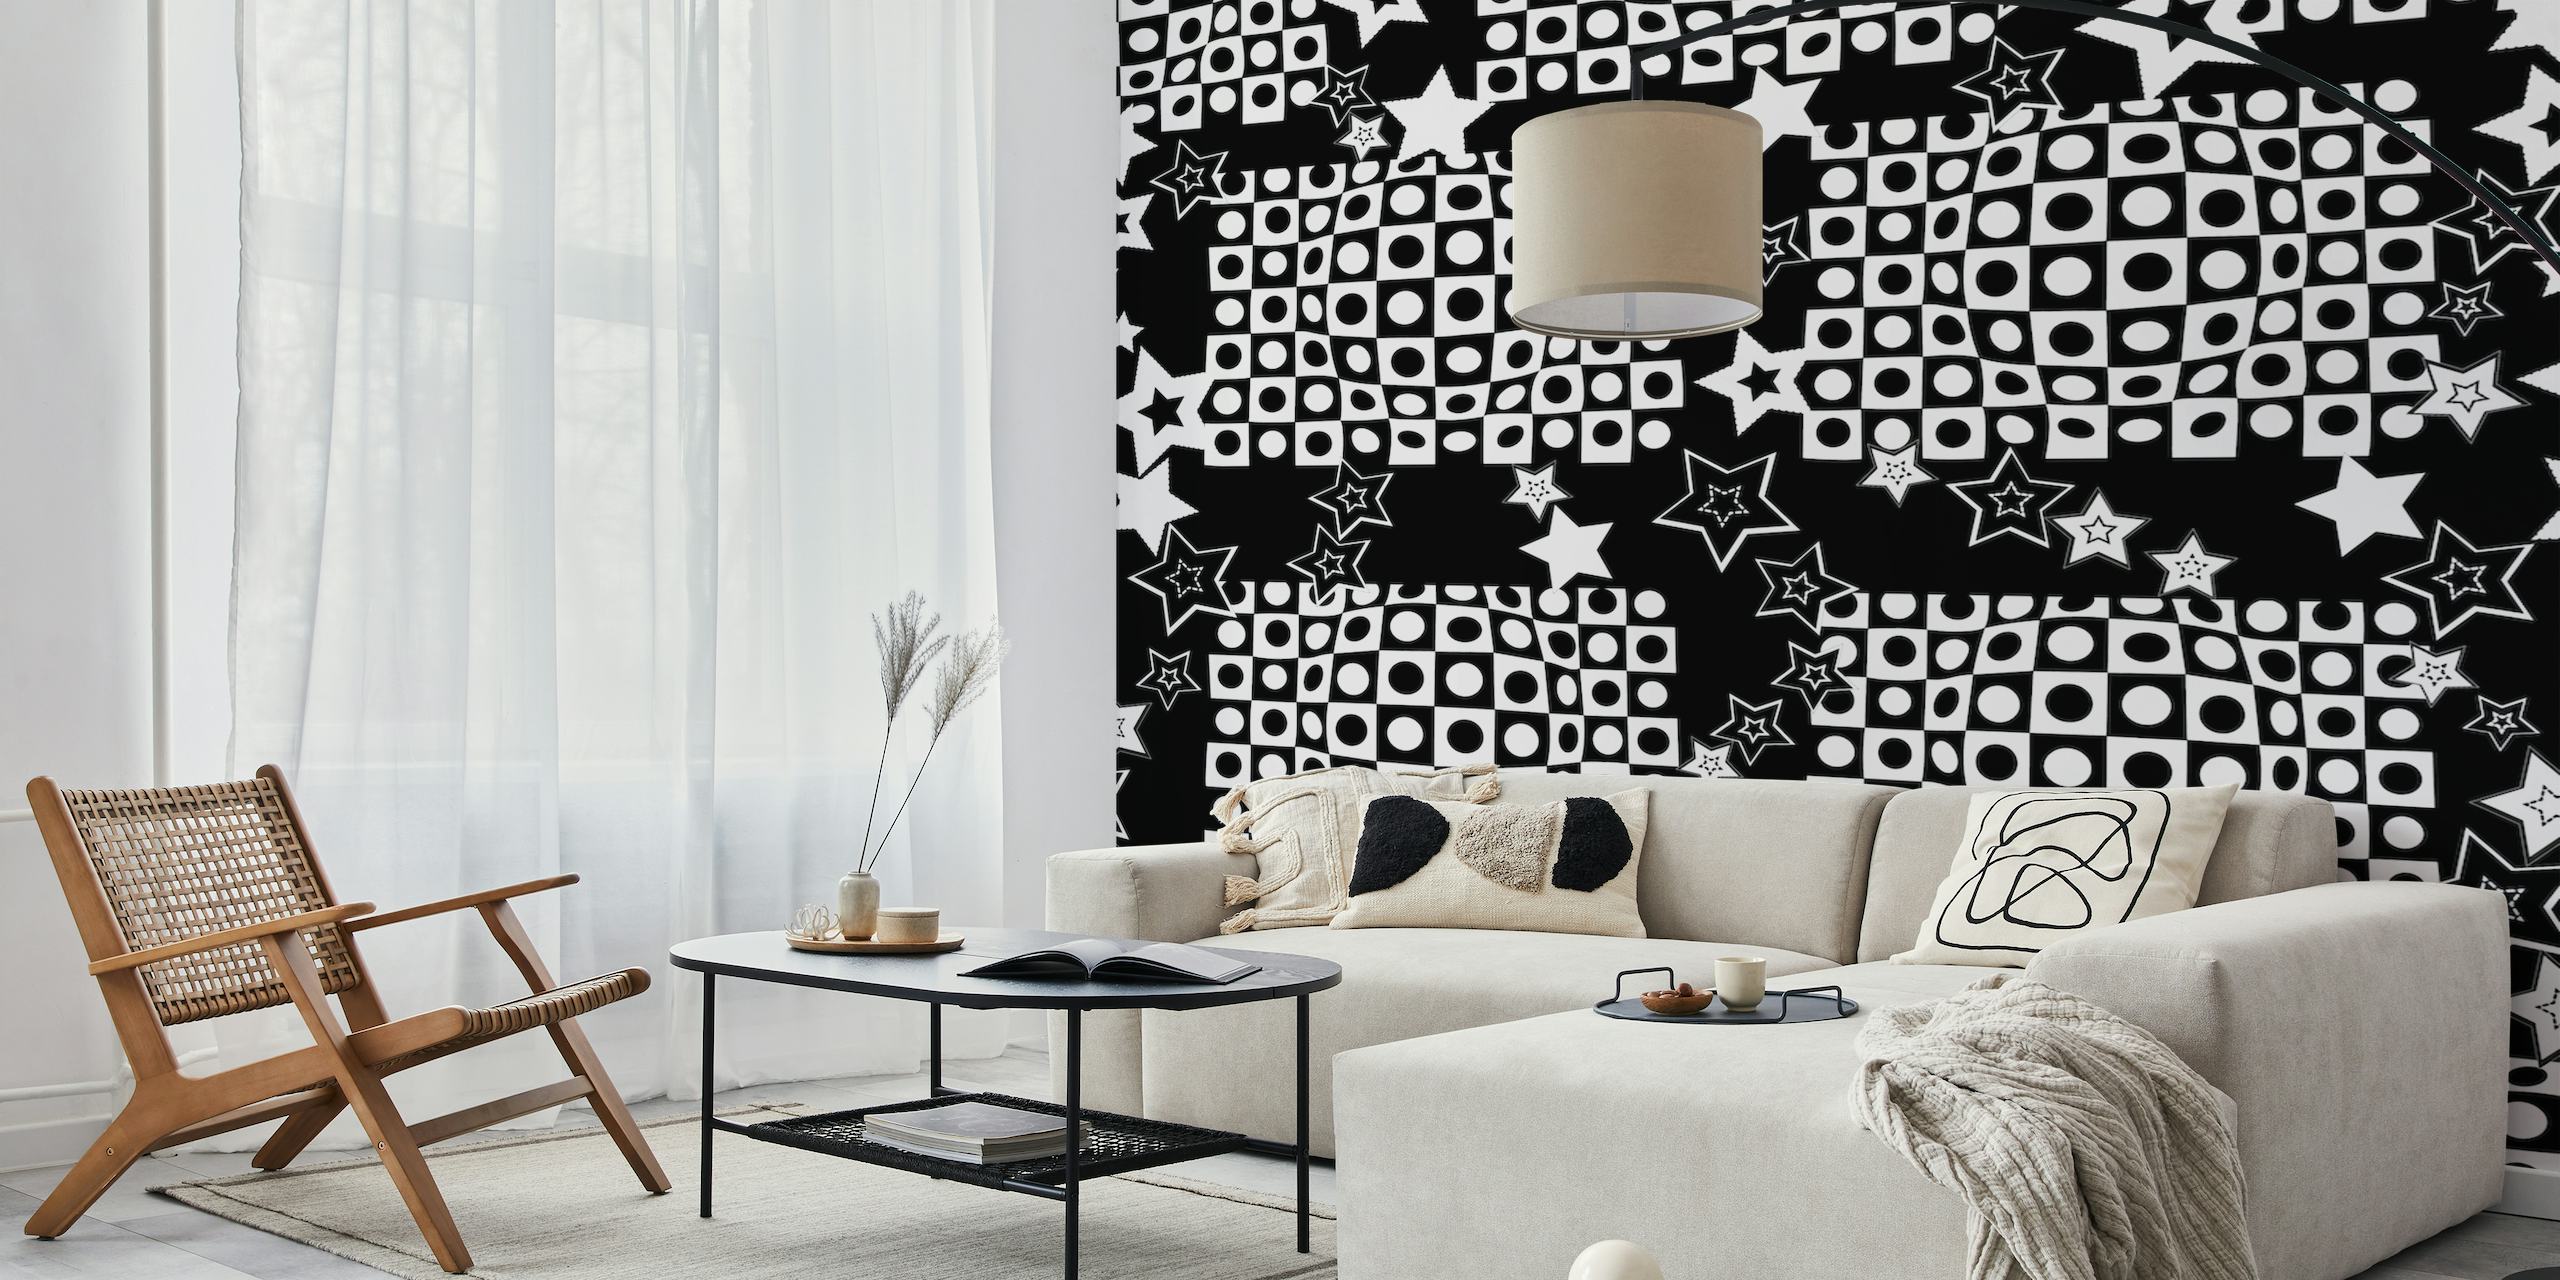 Mustavalkoinen optinen illuusio-seinämaalaus tähdillä moderniin huoneen sisustukseen